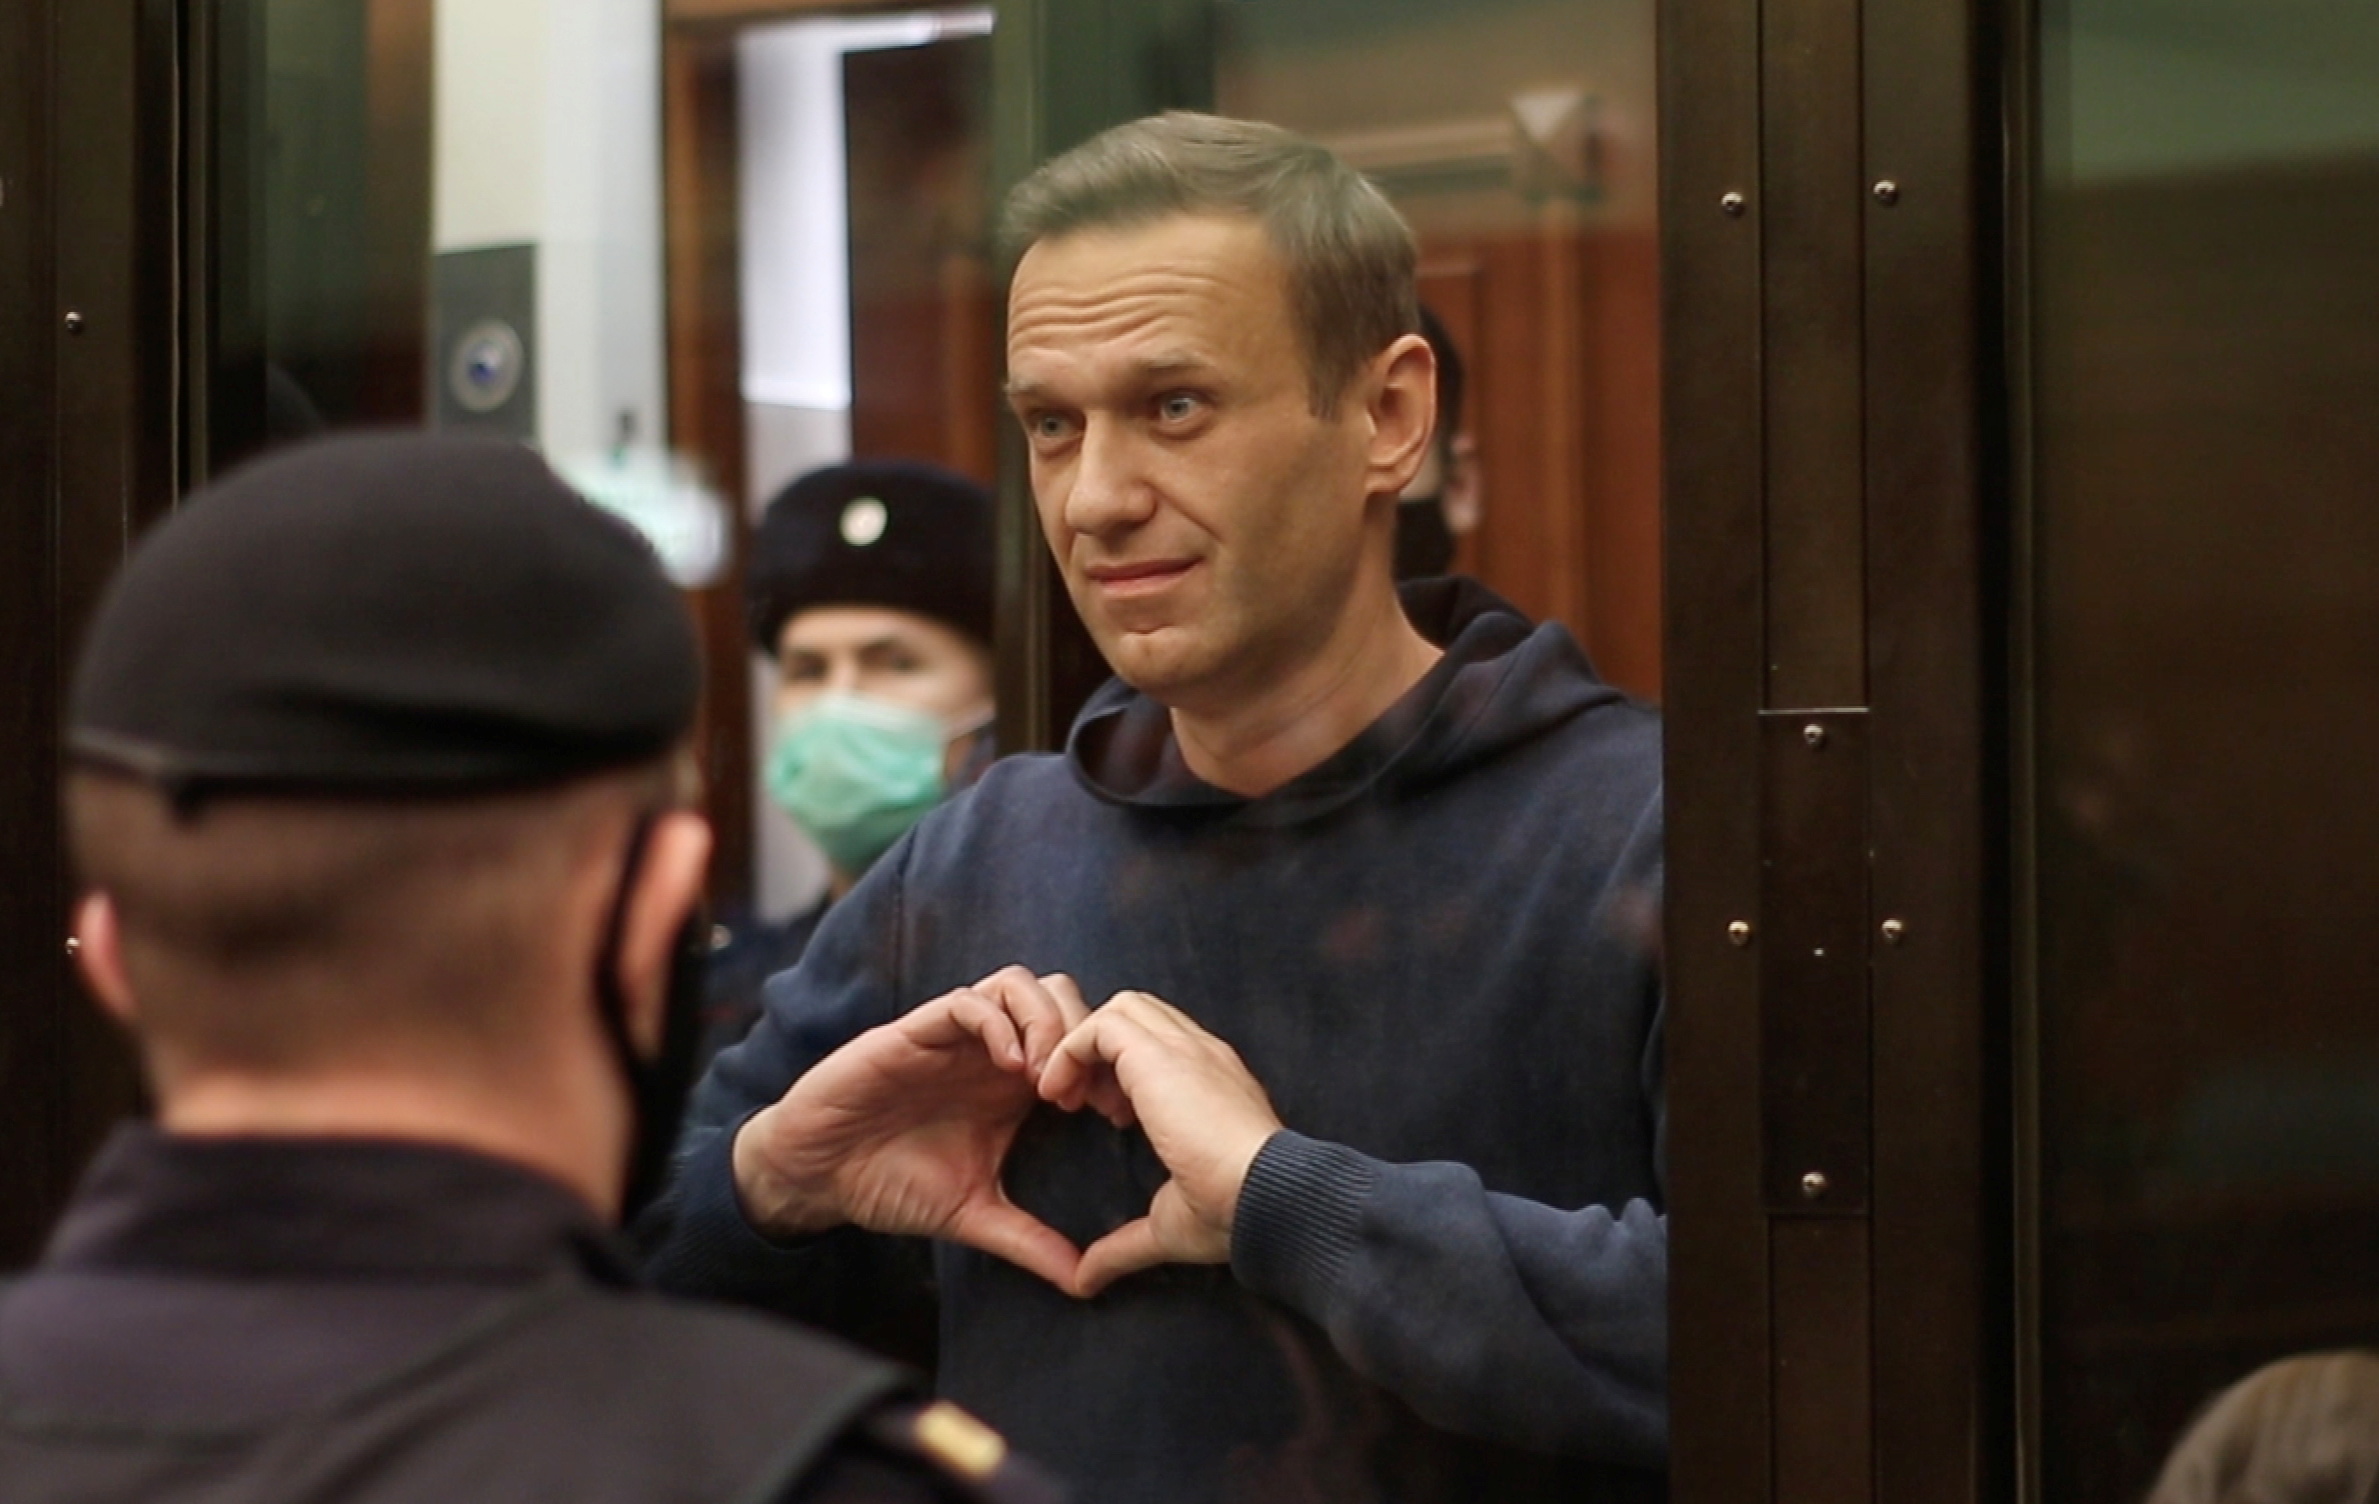 Der russische Oppositionsführer Alexej Nawalny starb letzten Monat im Gefängnis